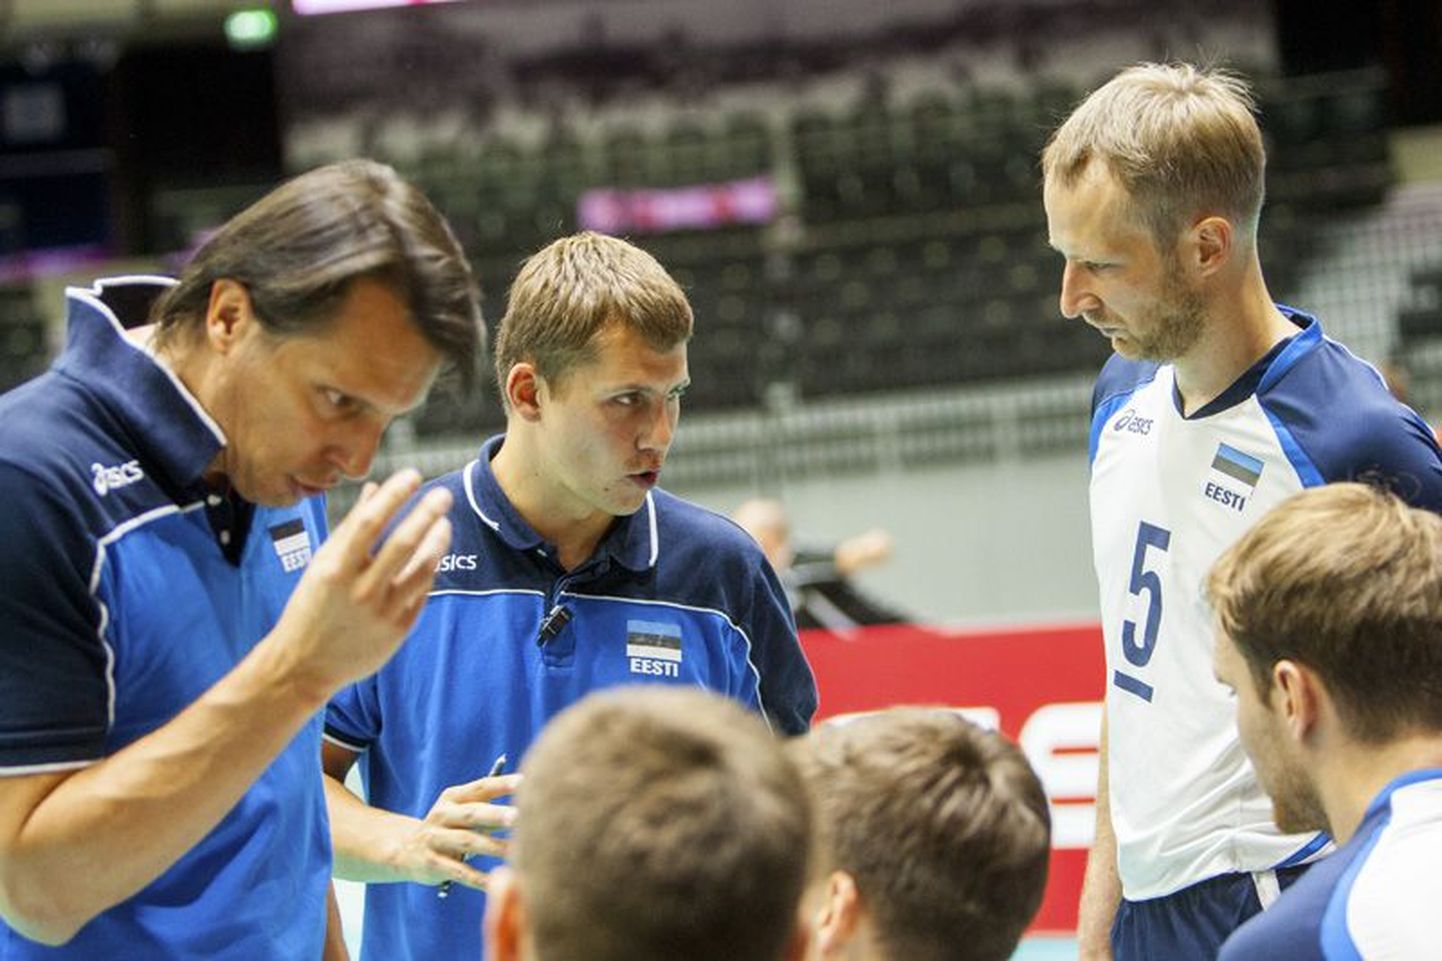 Treener Rainer Vassiljev juhendab koos Gianni Cretuga edukalt esinevat Eesti võrkpallikoondist. Tõenäoliselt on see ka üks põhjus, mis perekond Vassiljevid toetavad Eesti võrkpalliliigat.